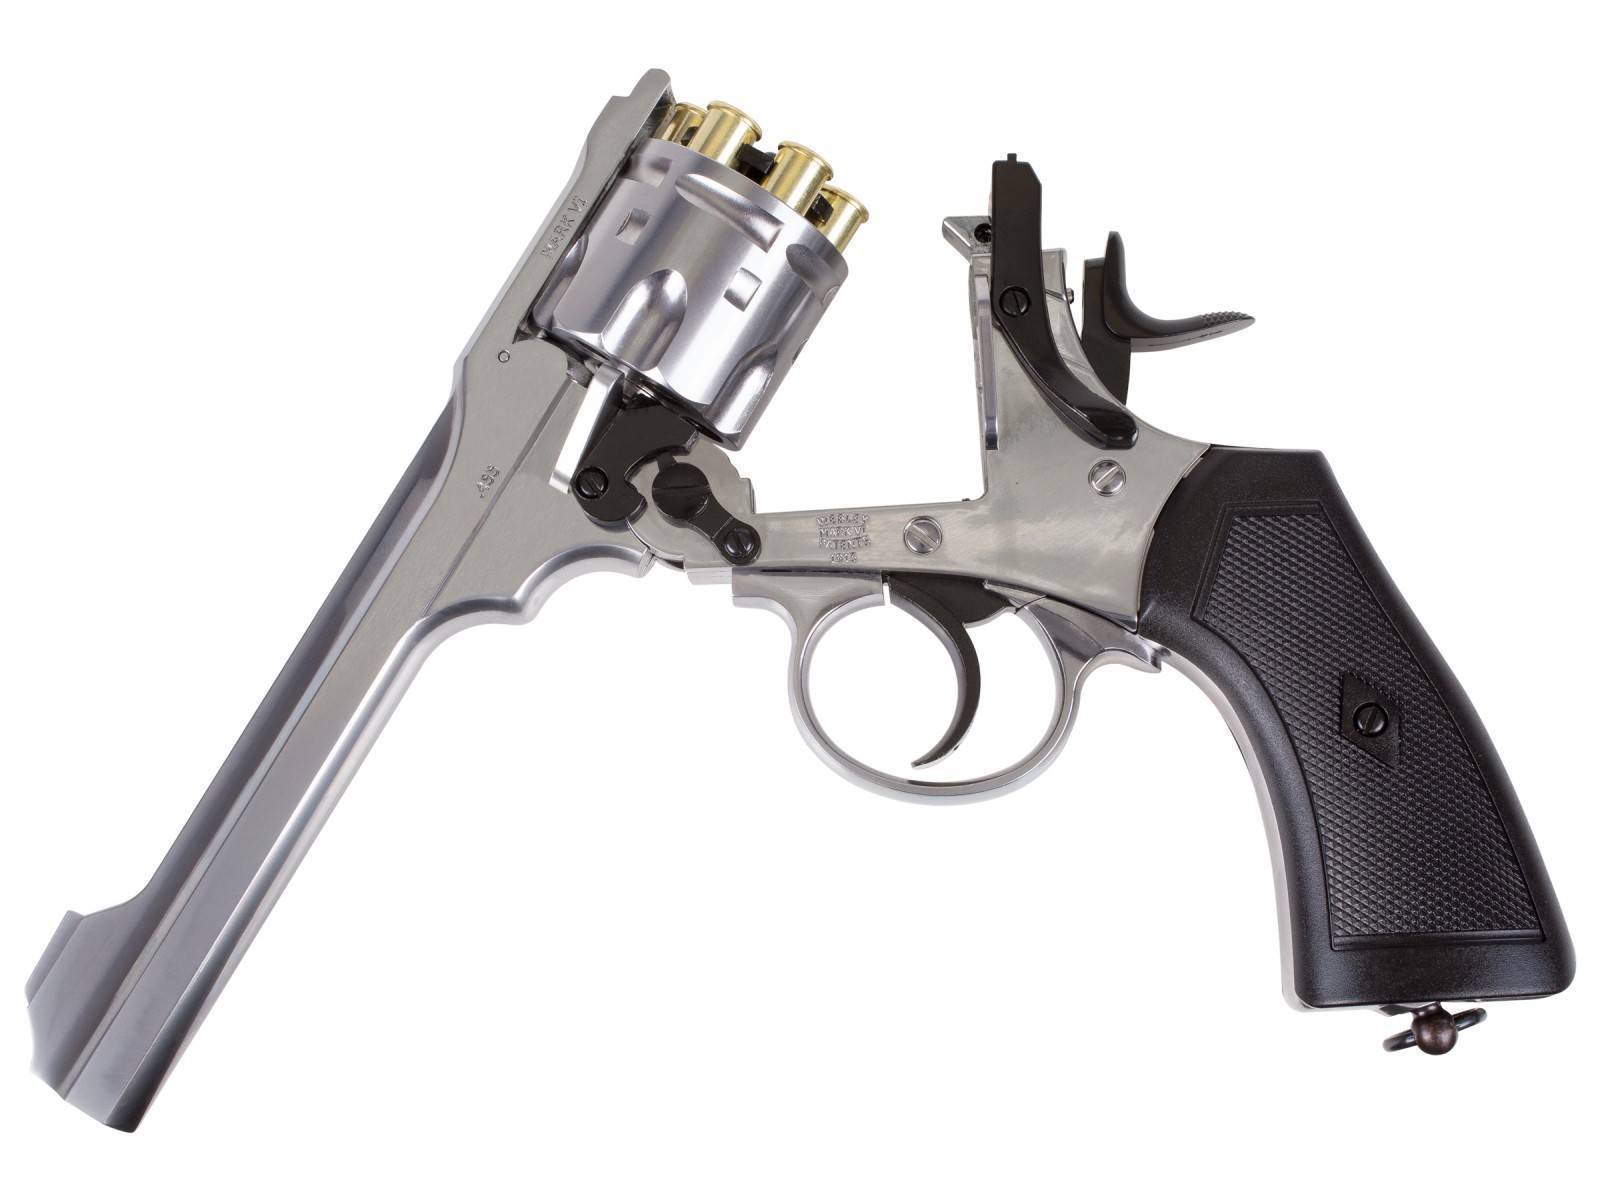 Револьвер «webley» — википедия. что такое револьвер «webley»